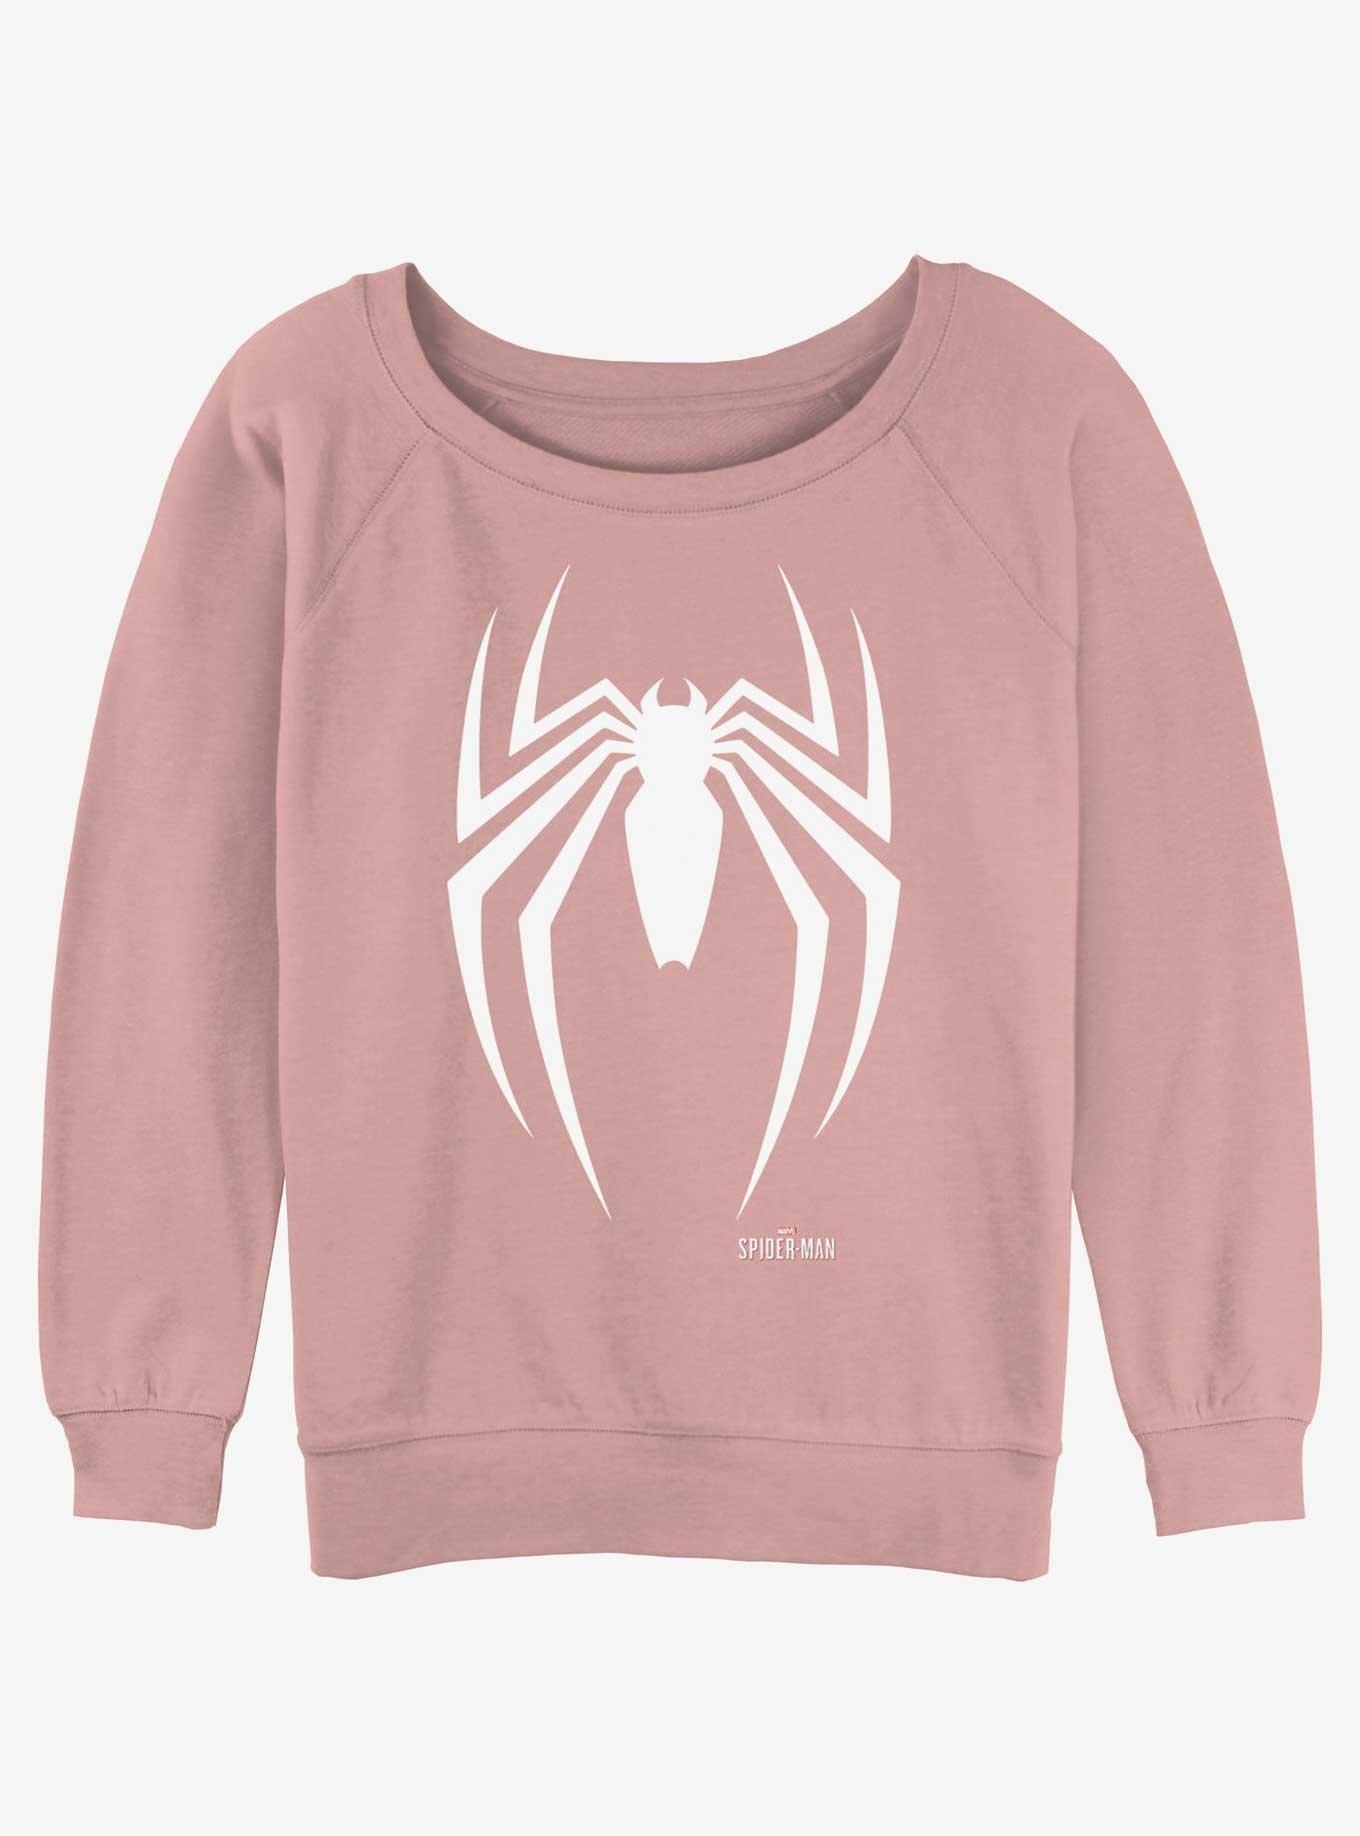 Marvel Spider-Man Icon Girls Slouchy Sweatshirt, DESERTPNK, hi-res